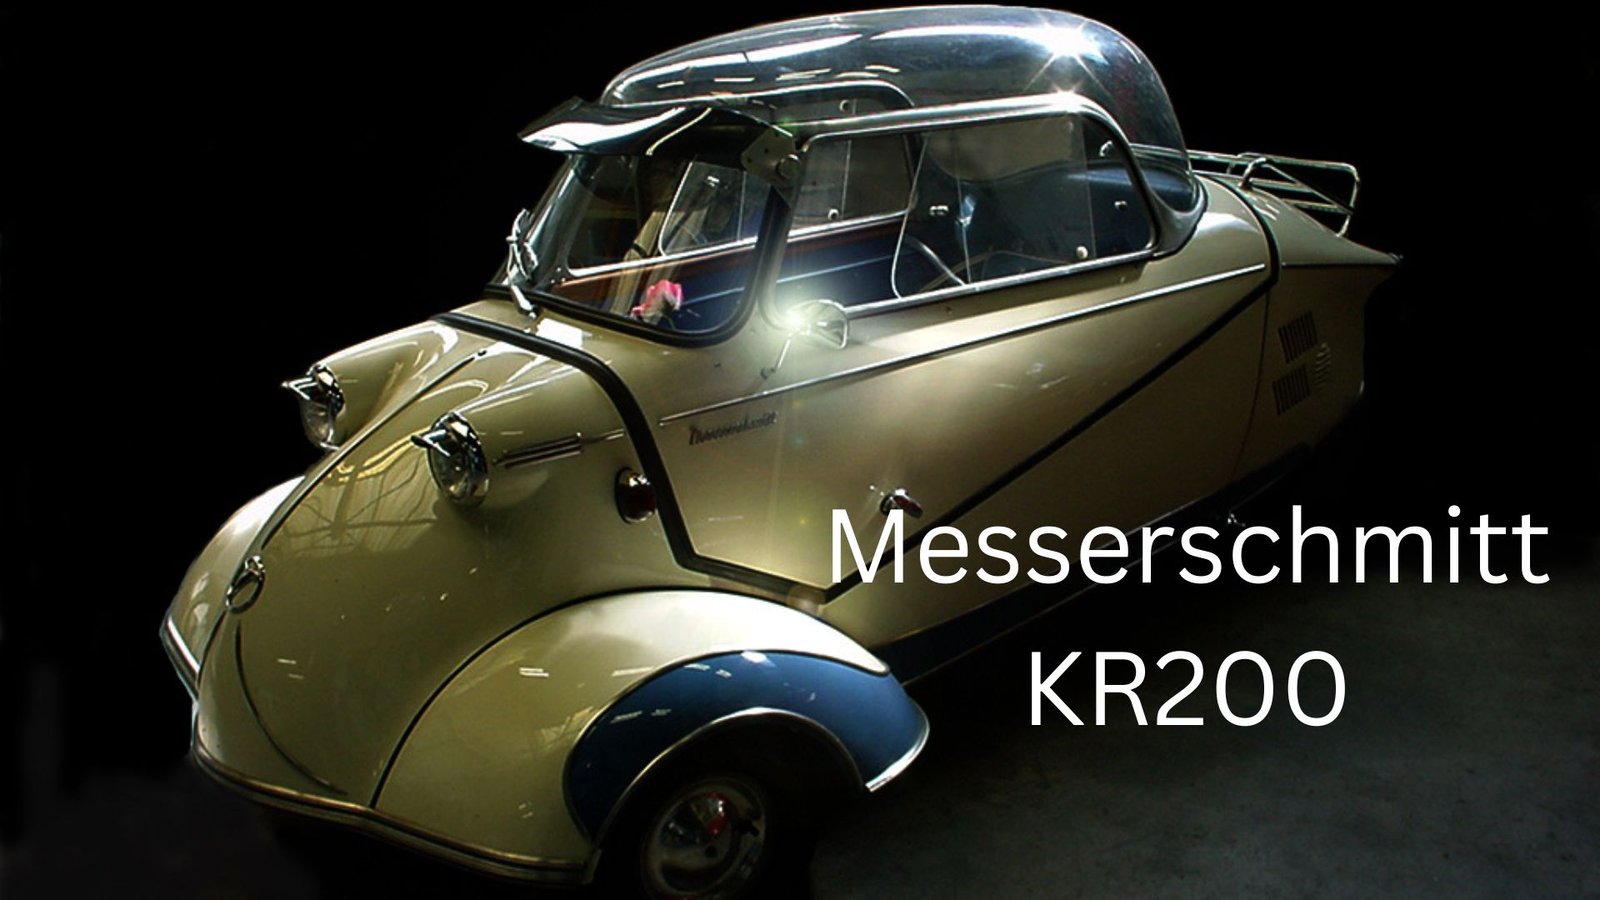 Messerschmitt KR200
